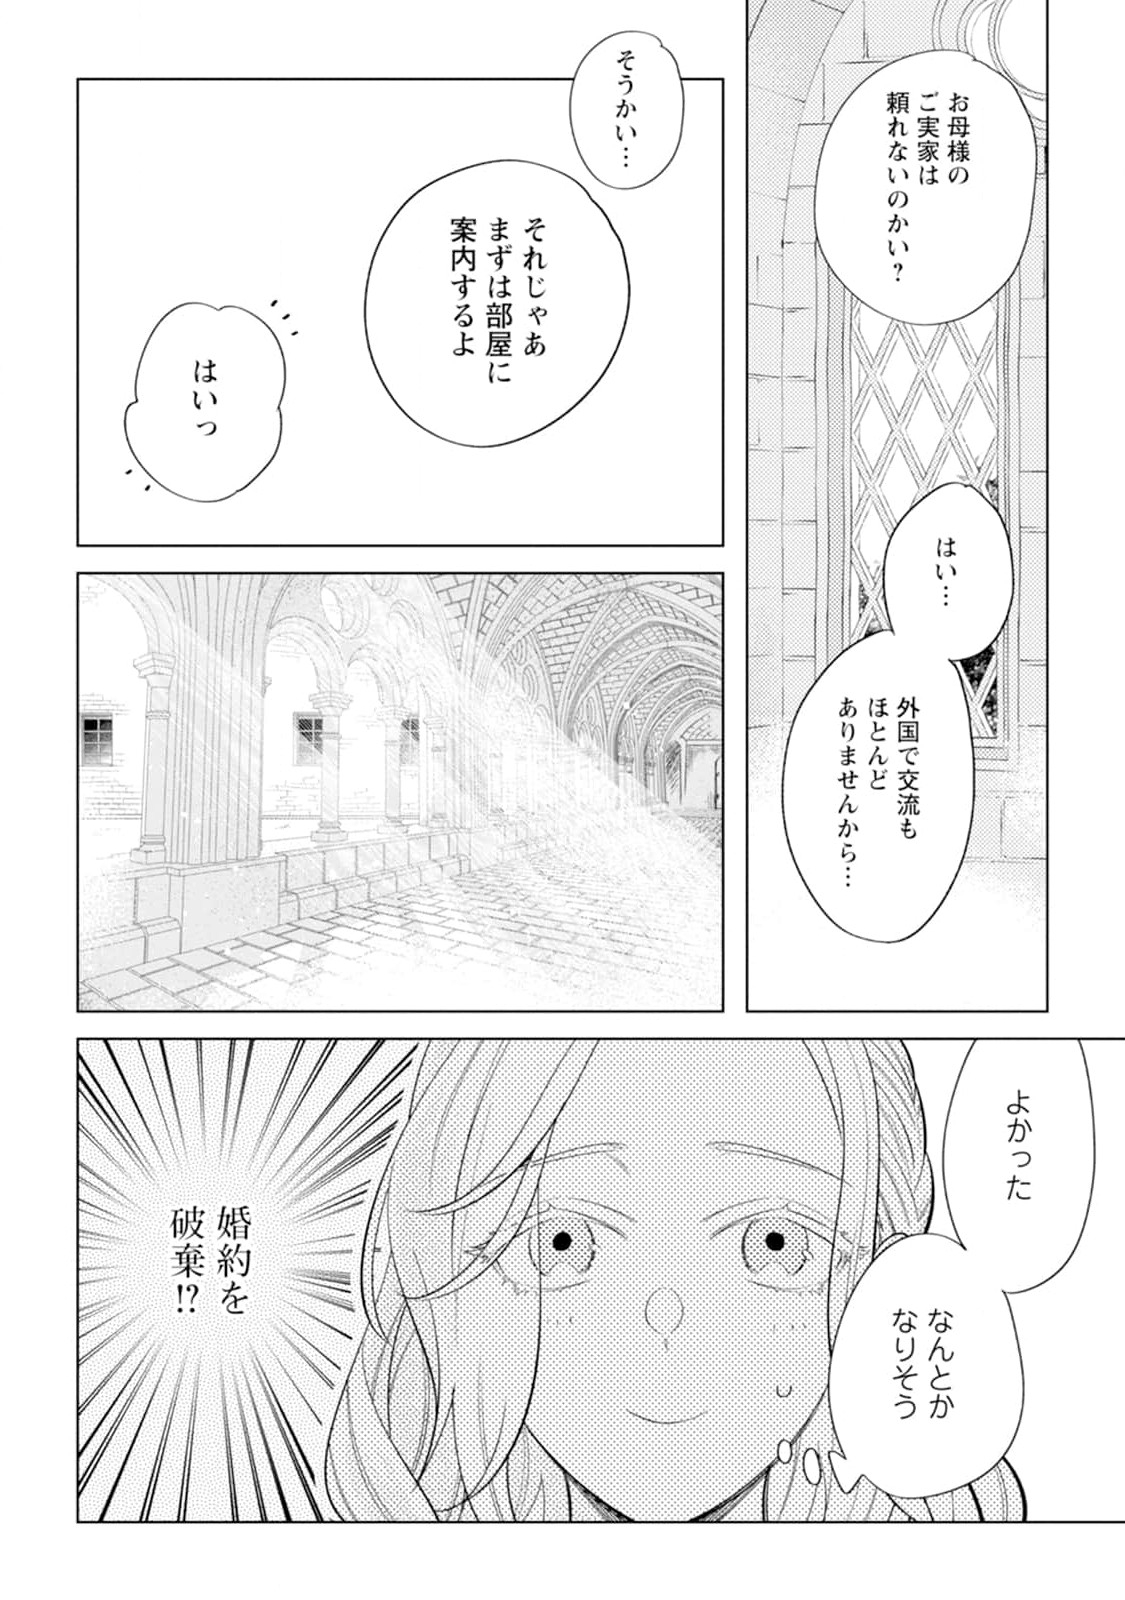 Dare ni mo Aisarenai no de Yuka wo Migaite Itara Soko ga Seiiki-ka shita Reijou no Hanashi - Chapter 2 - Page 2